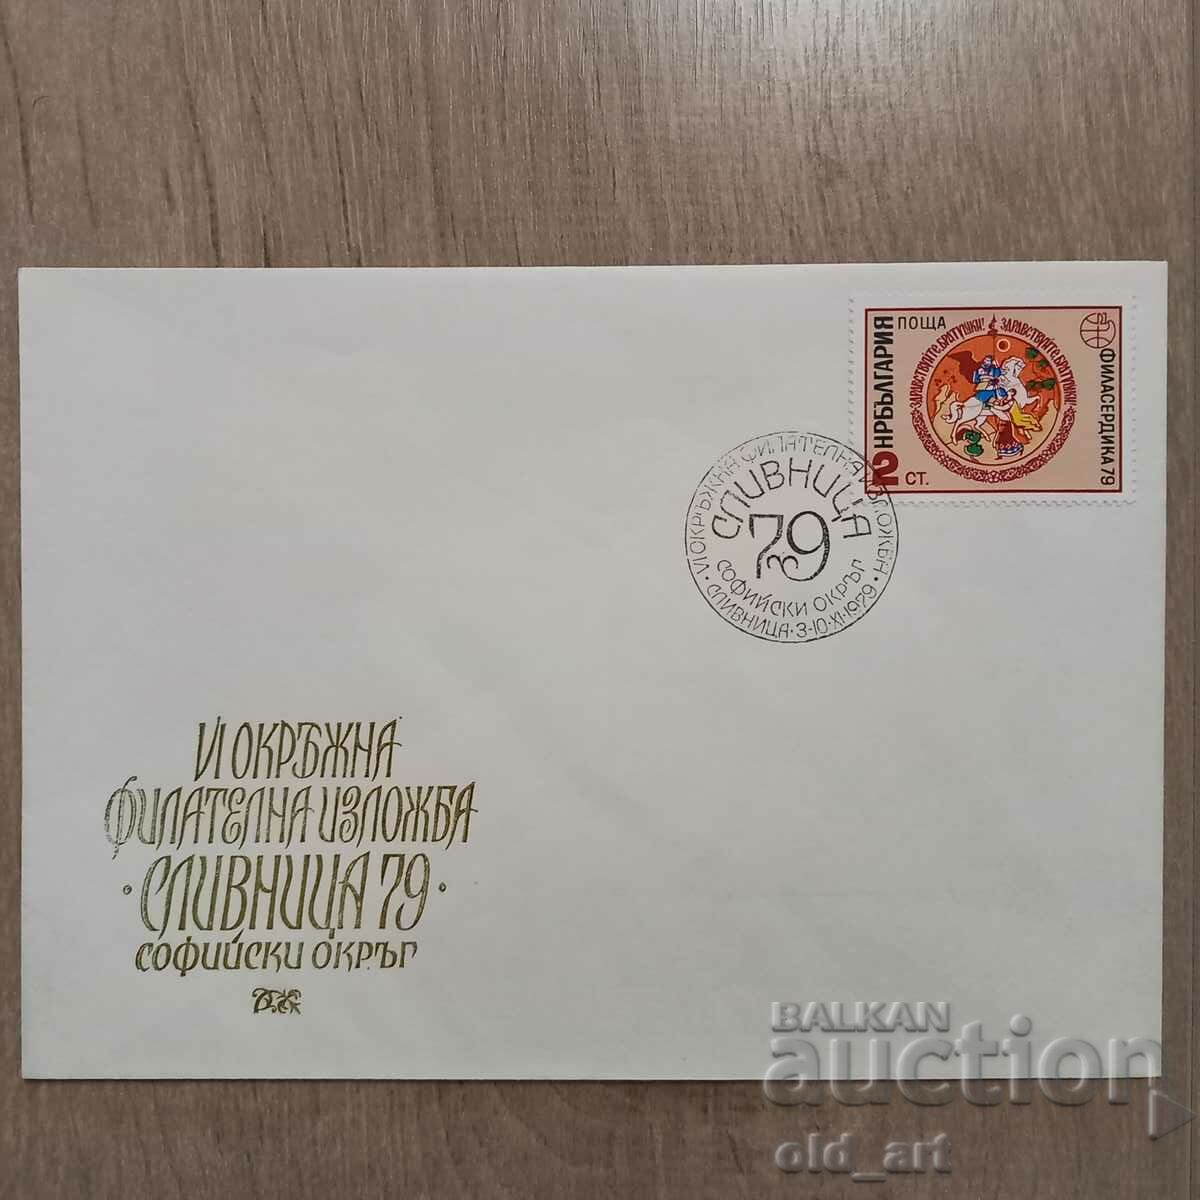 Ταχυδρομικός φάκελος - 6η Περιφερειακή Φιλοτελική Έκθεση Slivnitsa 79